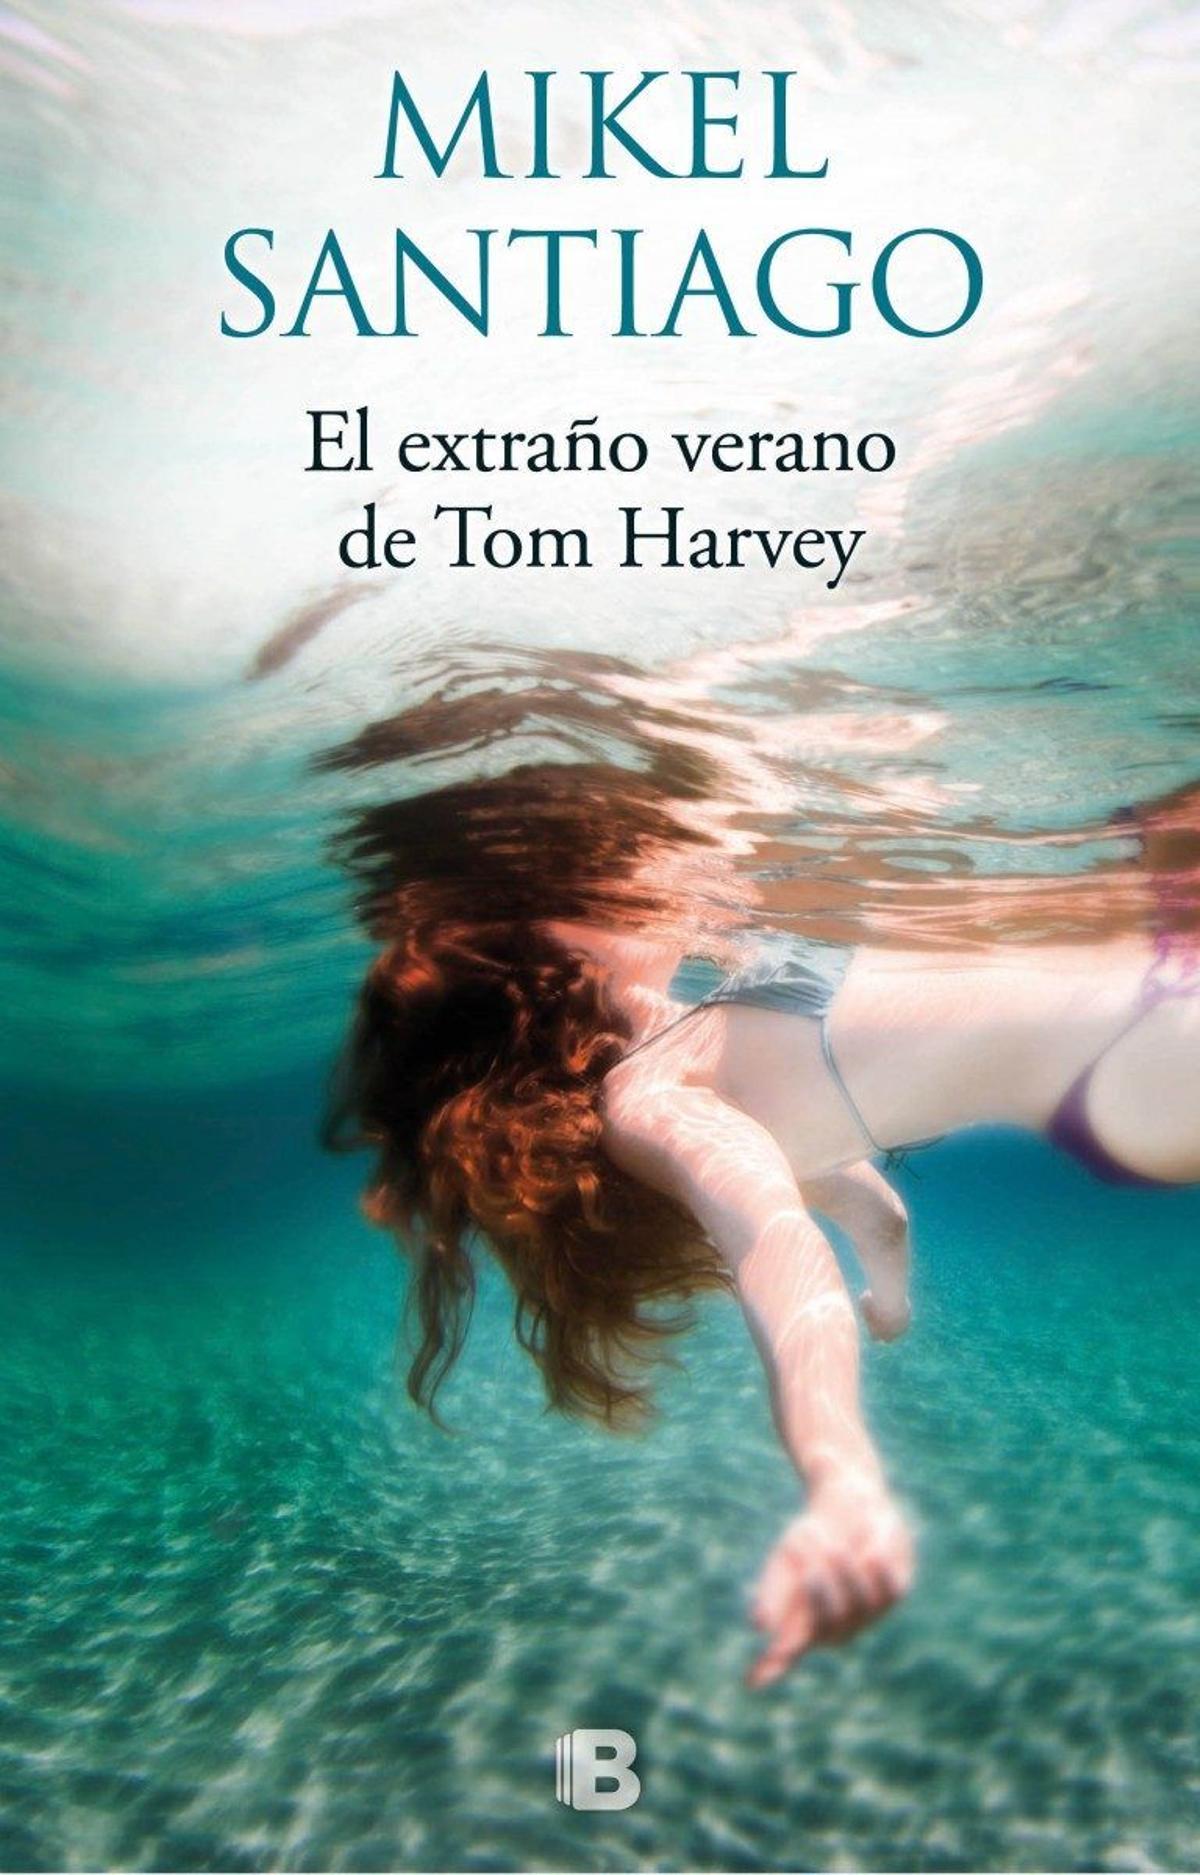 El extraño verano de Tom Harvey (Mikel Santiago)